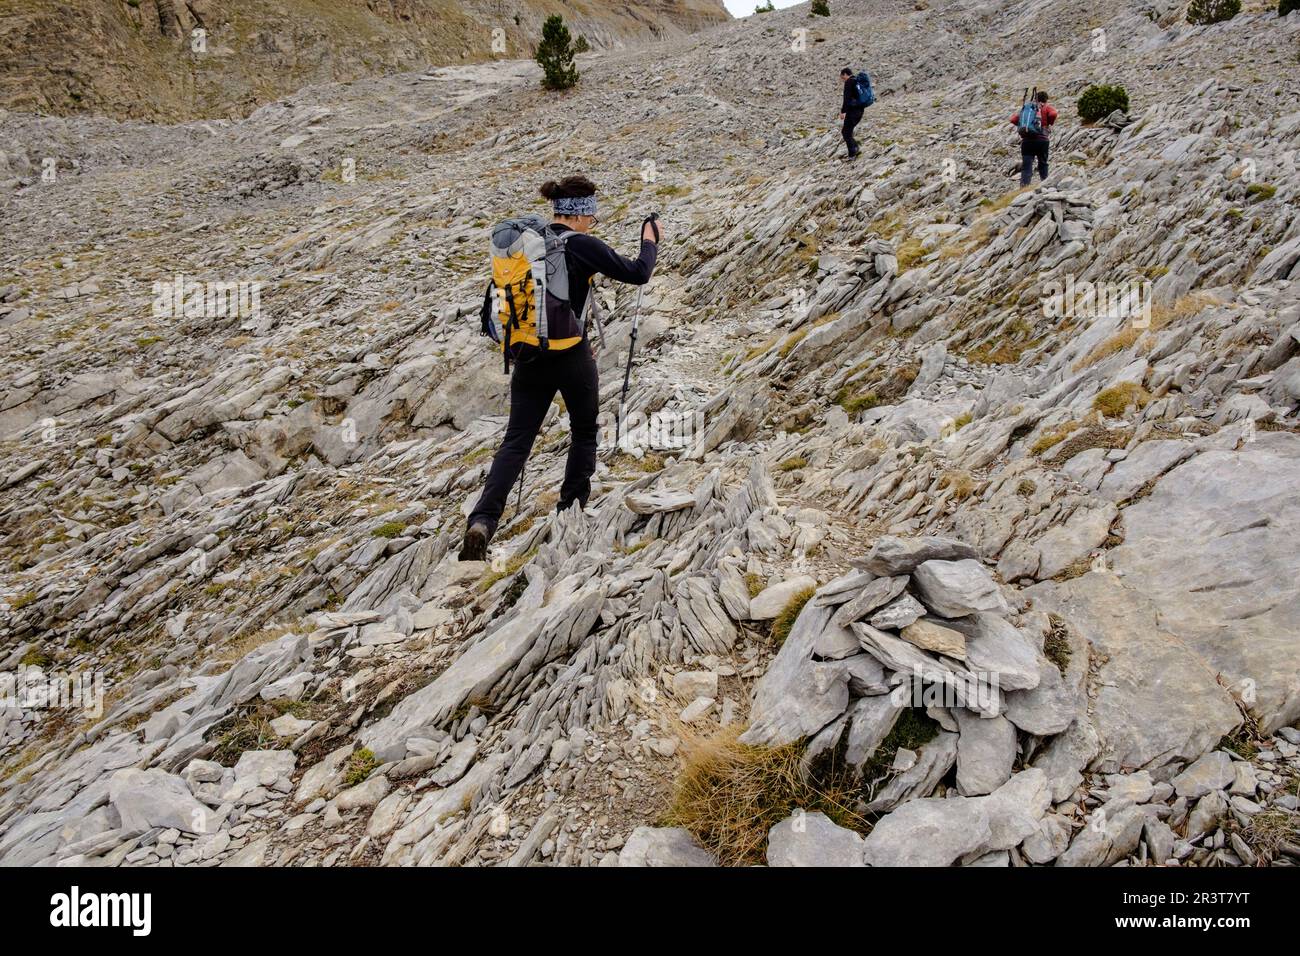 escursionistas ascendiendo el collado hacia el pico Mesa de los Tres Reyes, Parque natural de los Valles Occidentales, Huesca, cordillera de los pirineos, Spain, Europe. Stock Photo